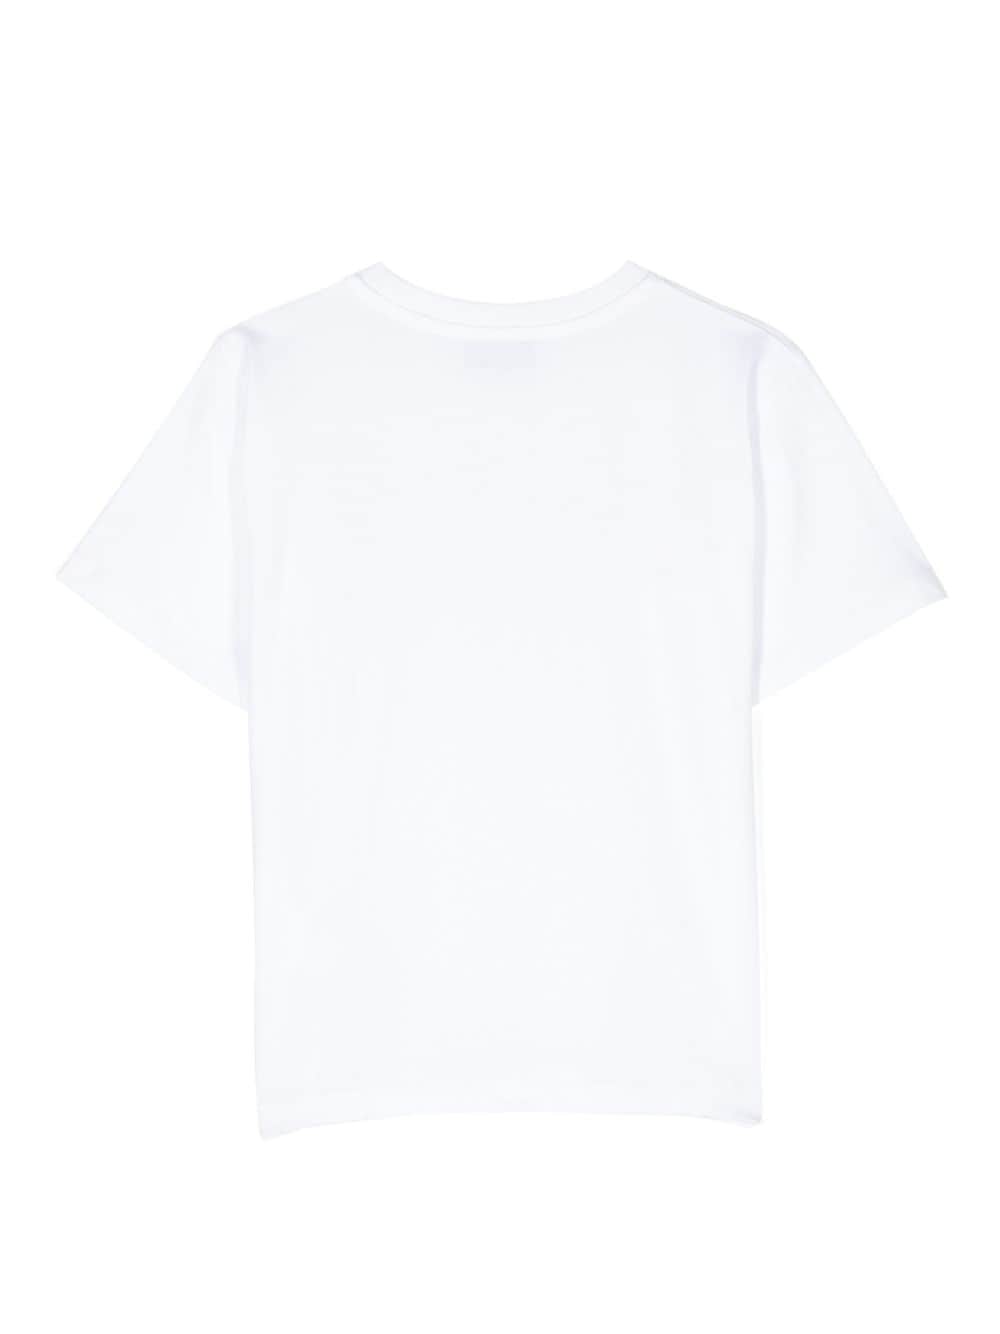 T-shirt bianca per bambini con logo